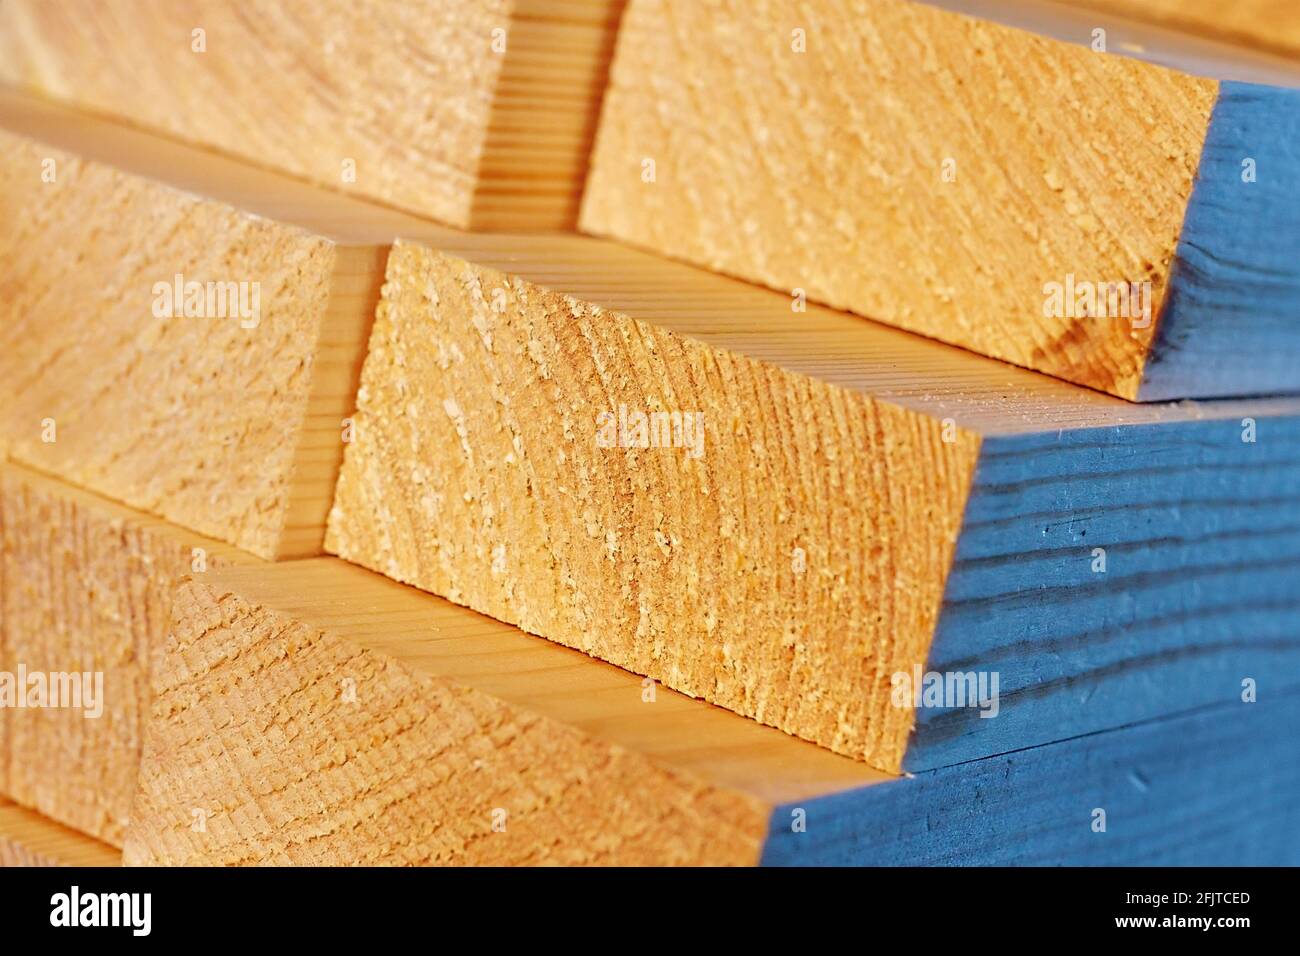 Die Holzstäbe werden in einem Stapel gestapelt. Sägen Trocknen und Vermarktung von Holz. Industrieller Hintergrund. Nahaufnahme der Baumaterialien. Werbefoto Stockfoto